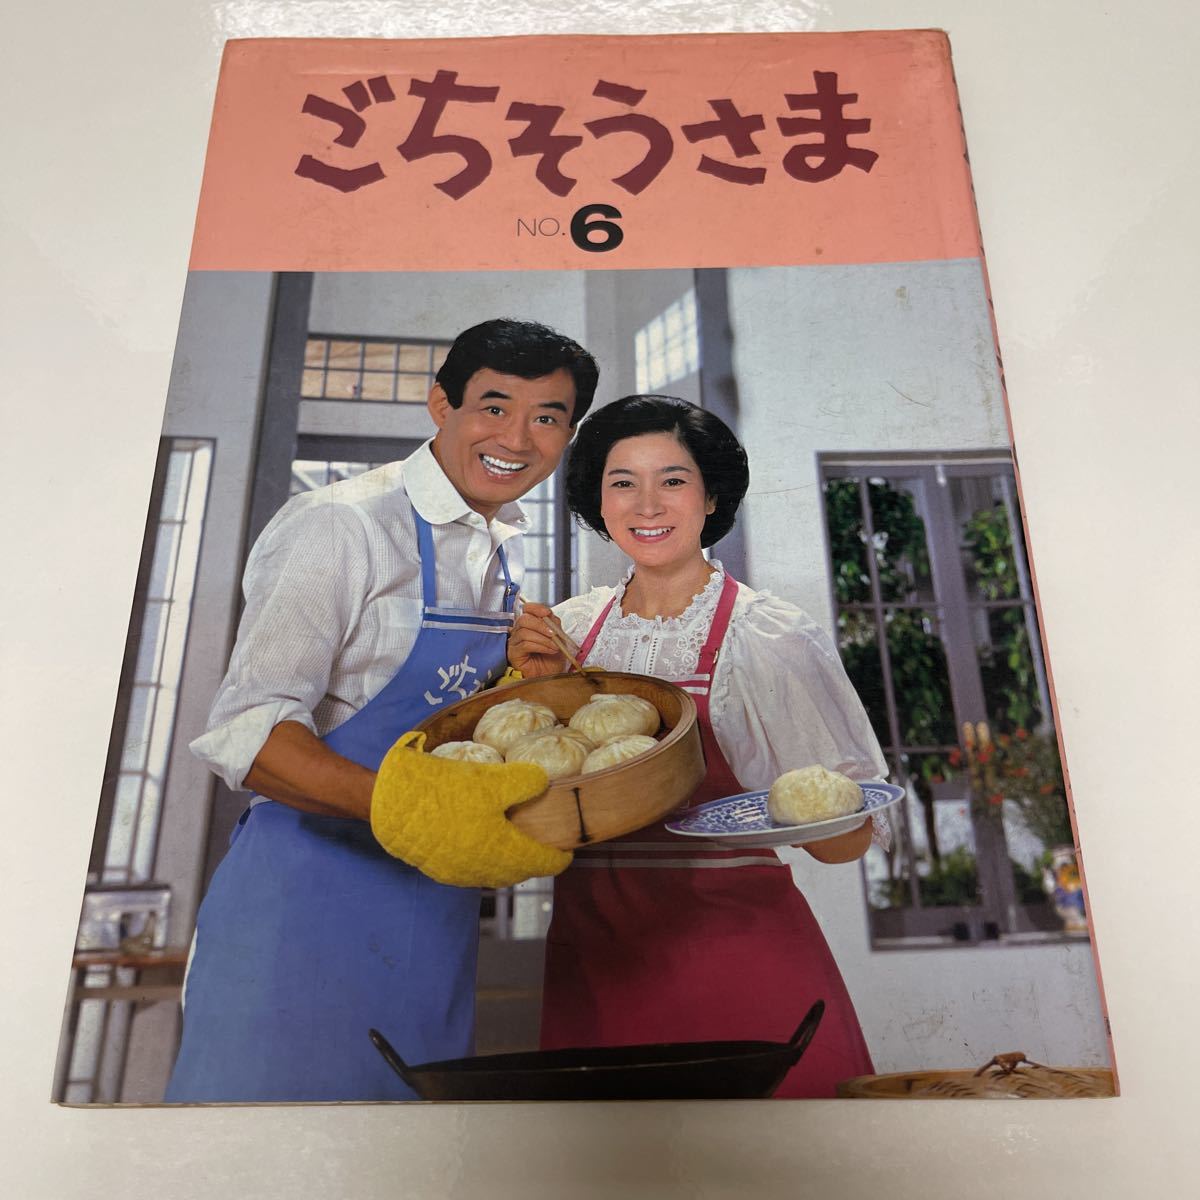 ごちそうさま no.6 昭和59年 初版 日本テレビ 高島忠夫 寿美花代 レシピ